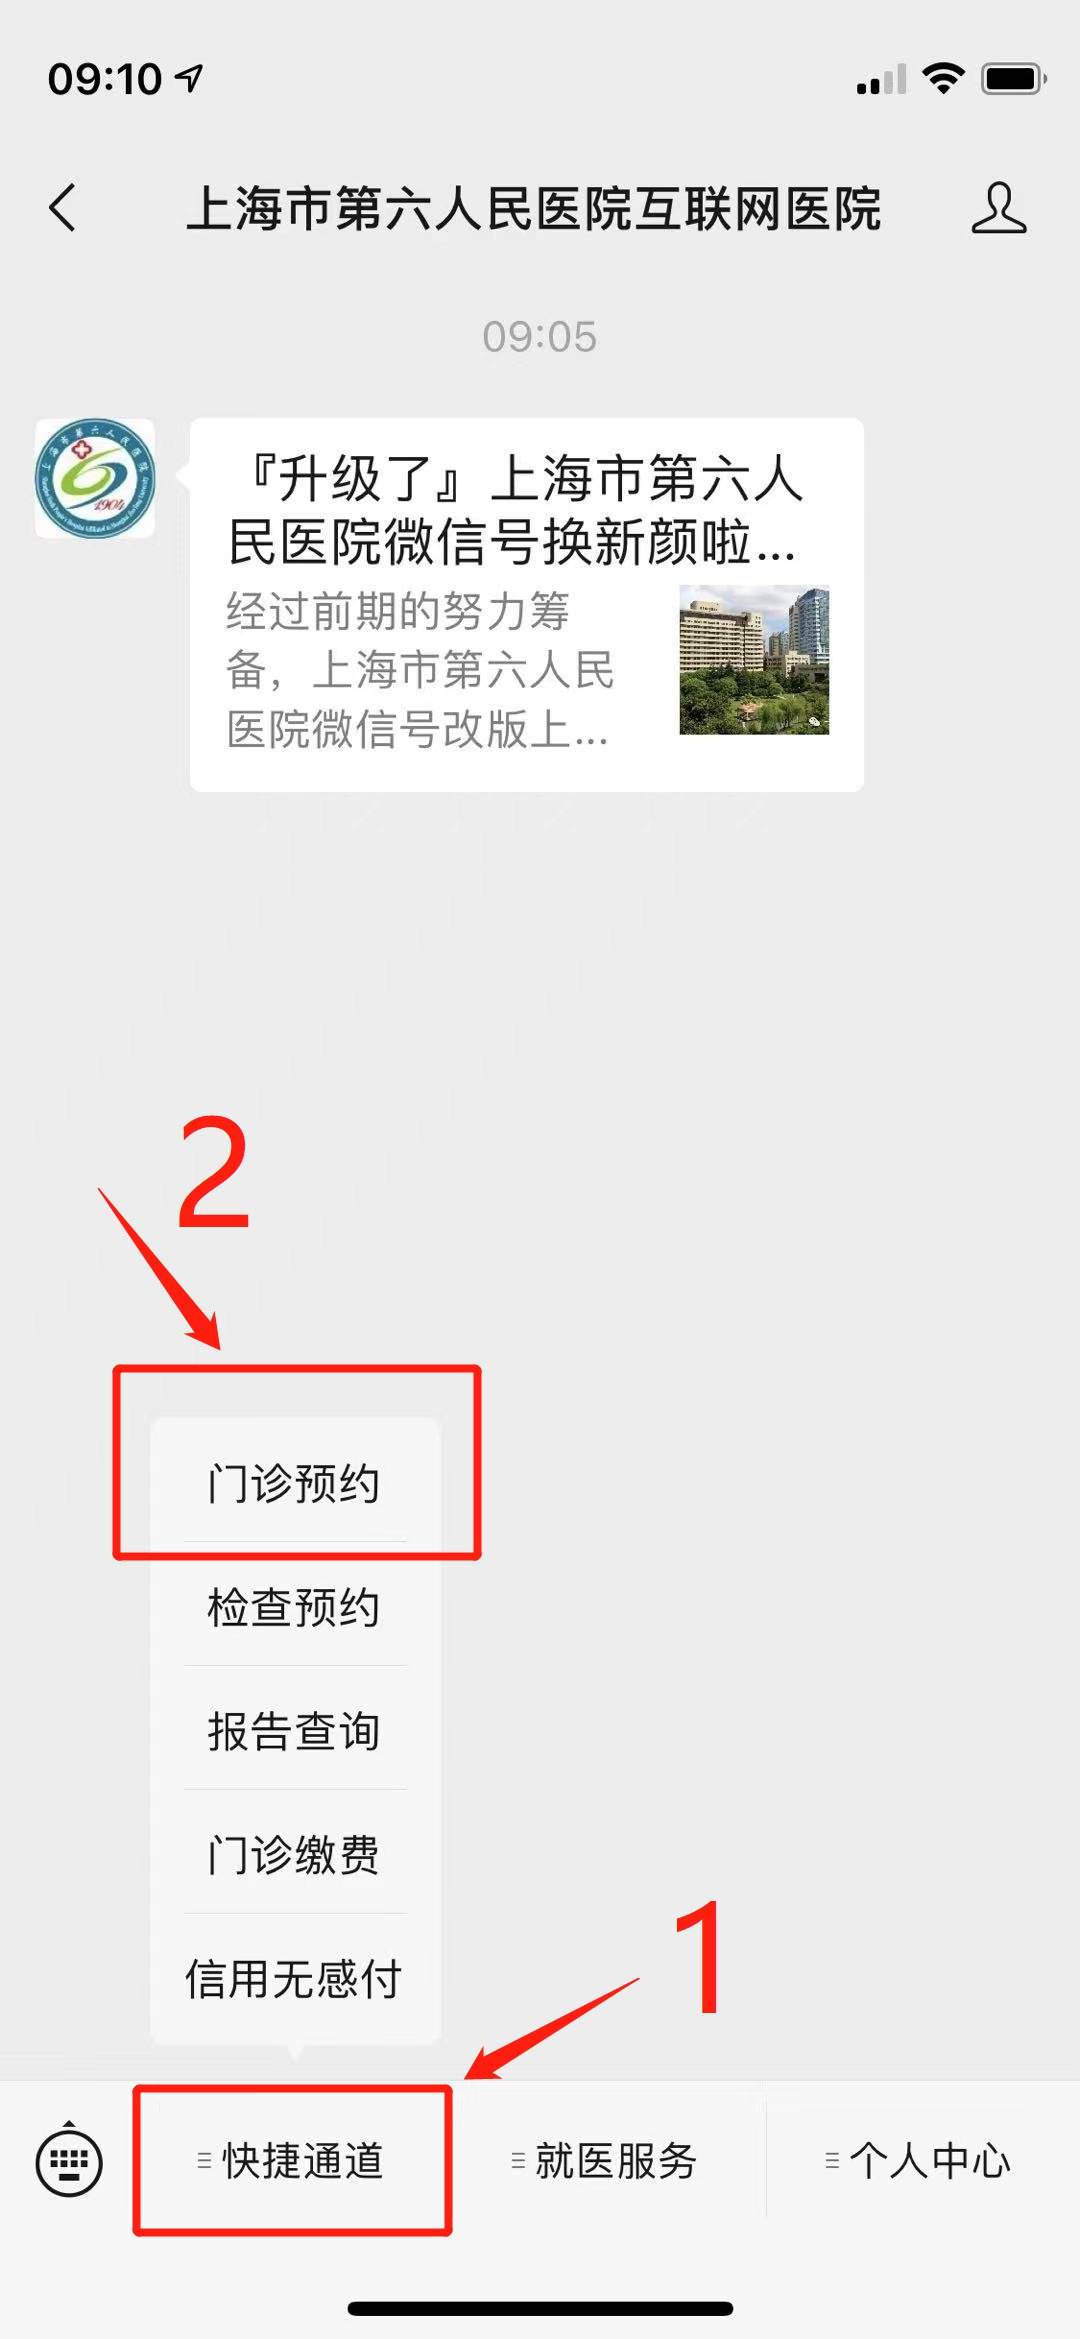 包含北京市第六医院黄牛预约挂号-欢迎咨询的词条